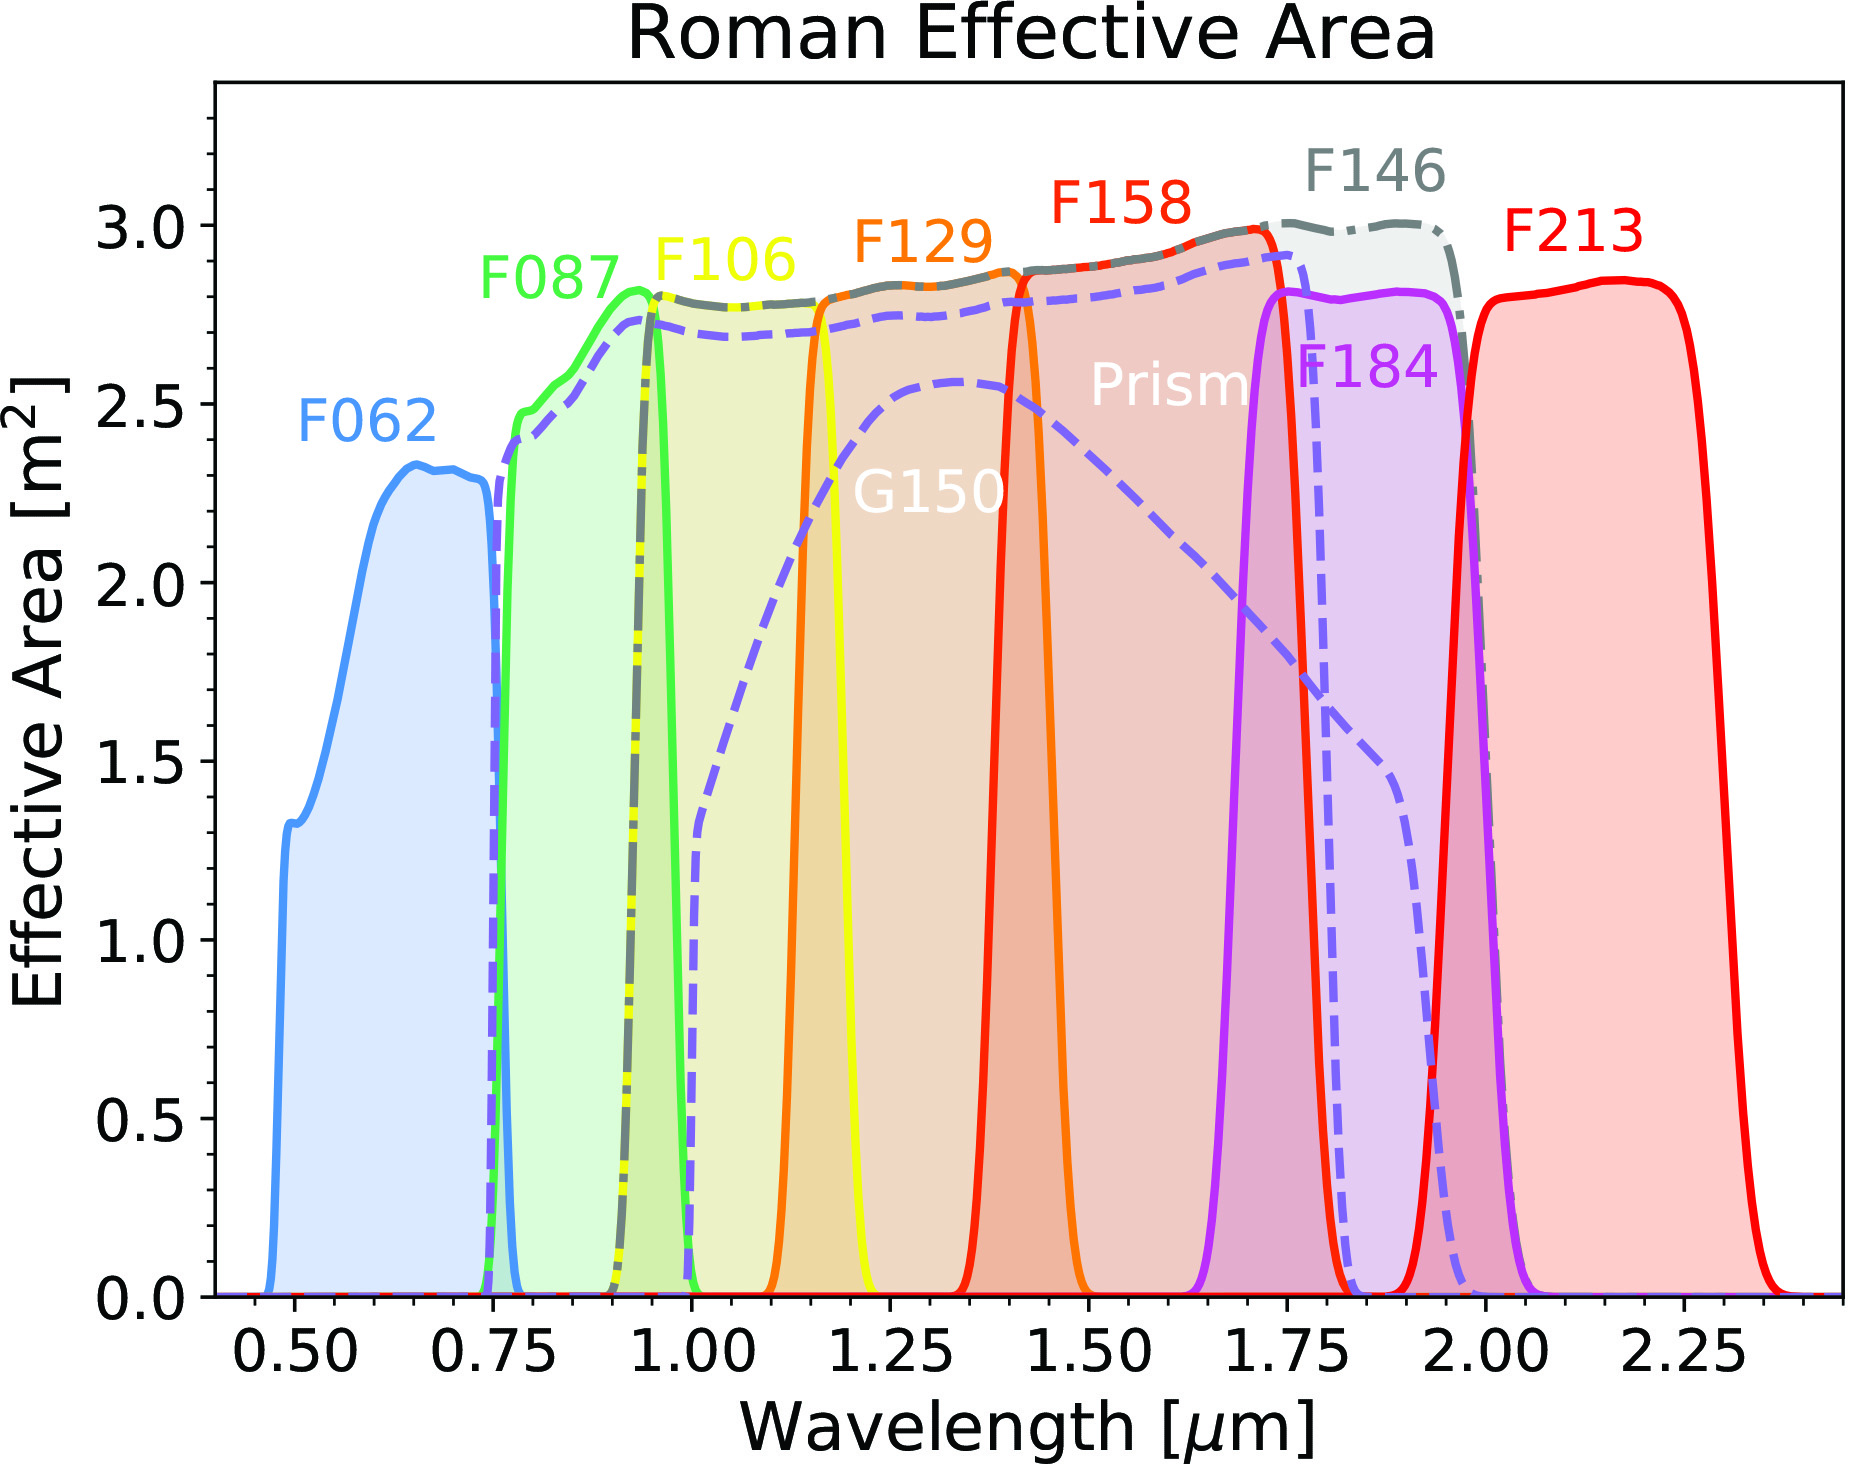 Roman Effective Area